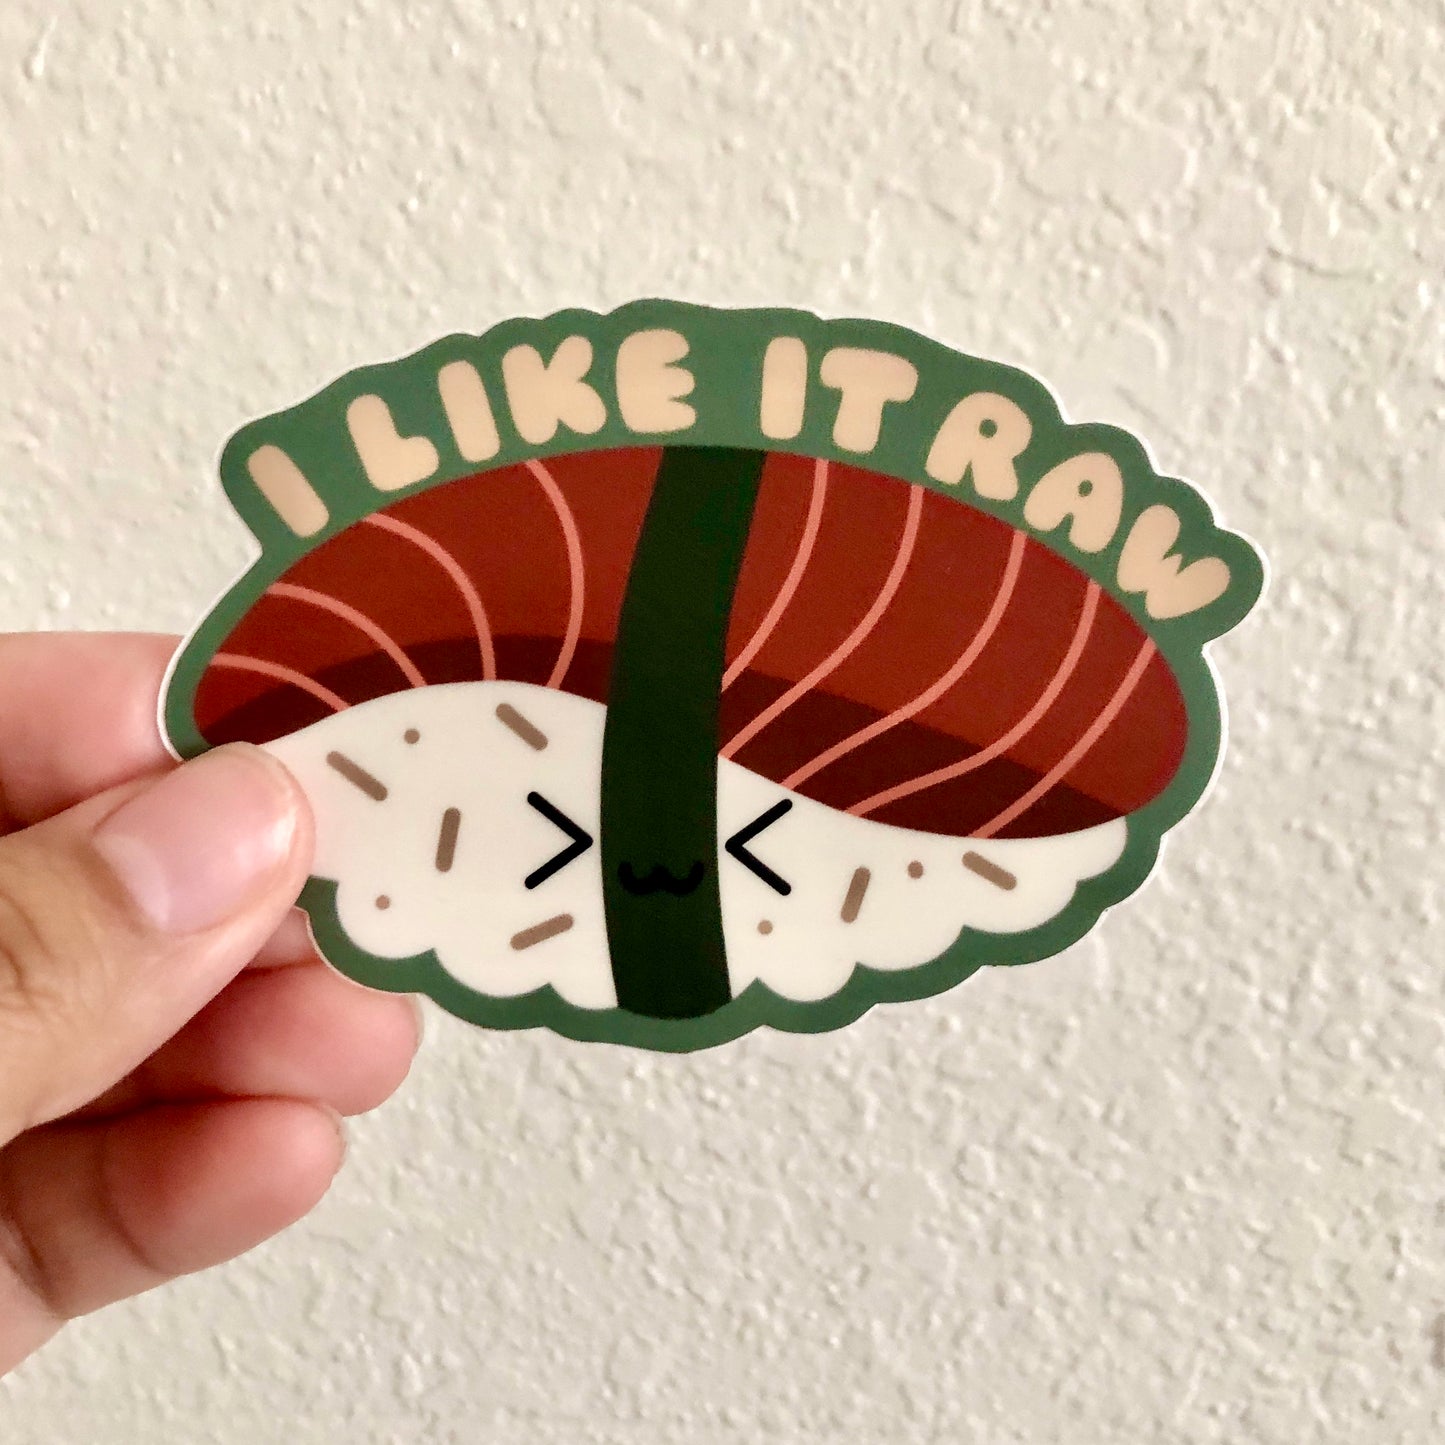 I Like it Raw Sushi Vinyl Sticker